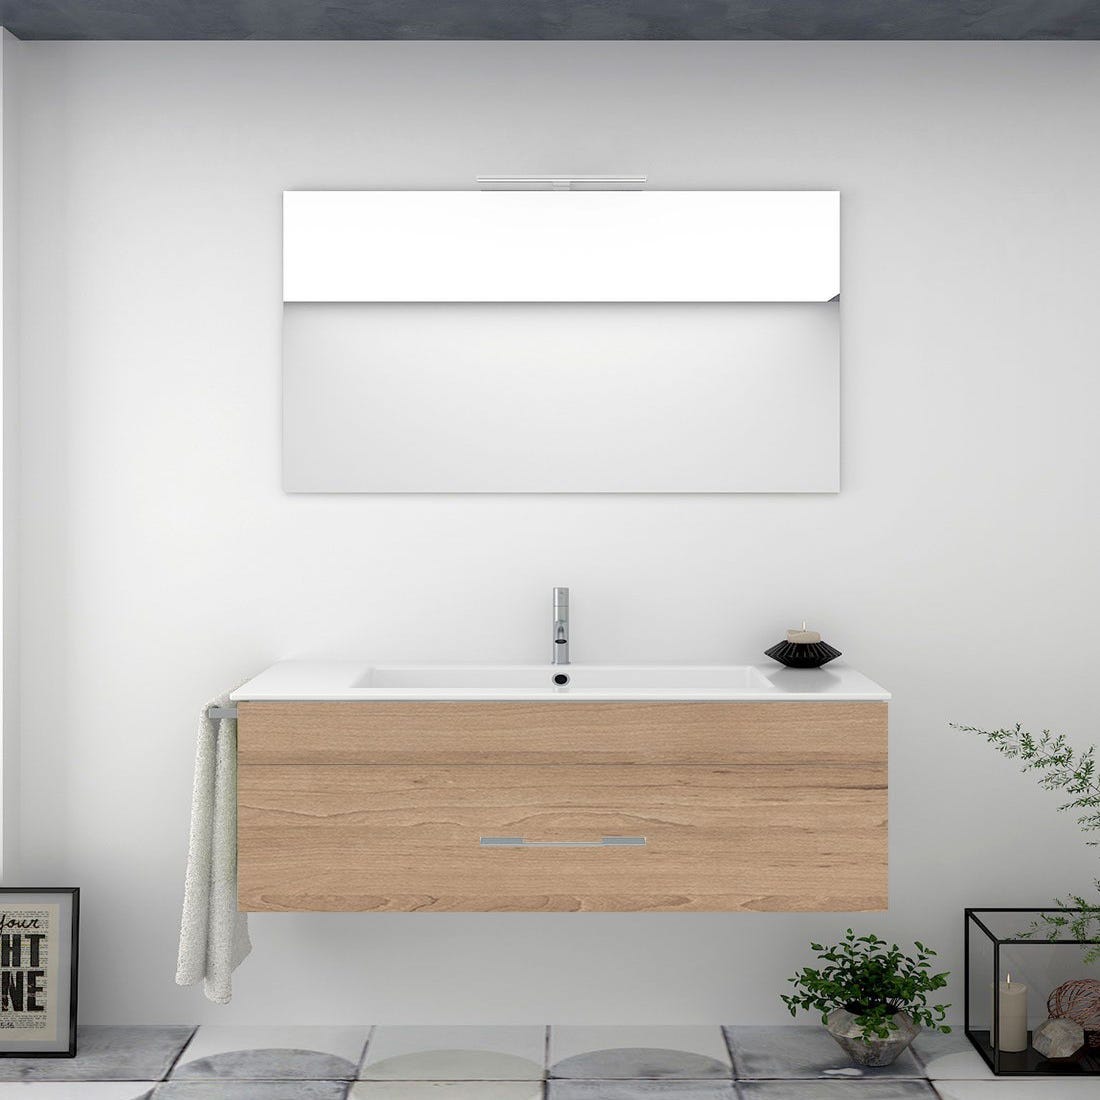 Mueble de Baño FLORENCIA incluye lavabo dos senos y espejo 120x45Cm Blanco